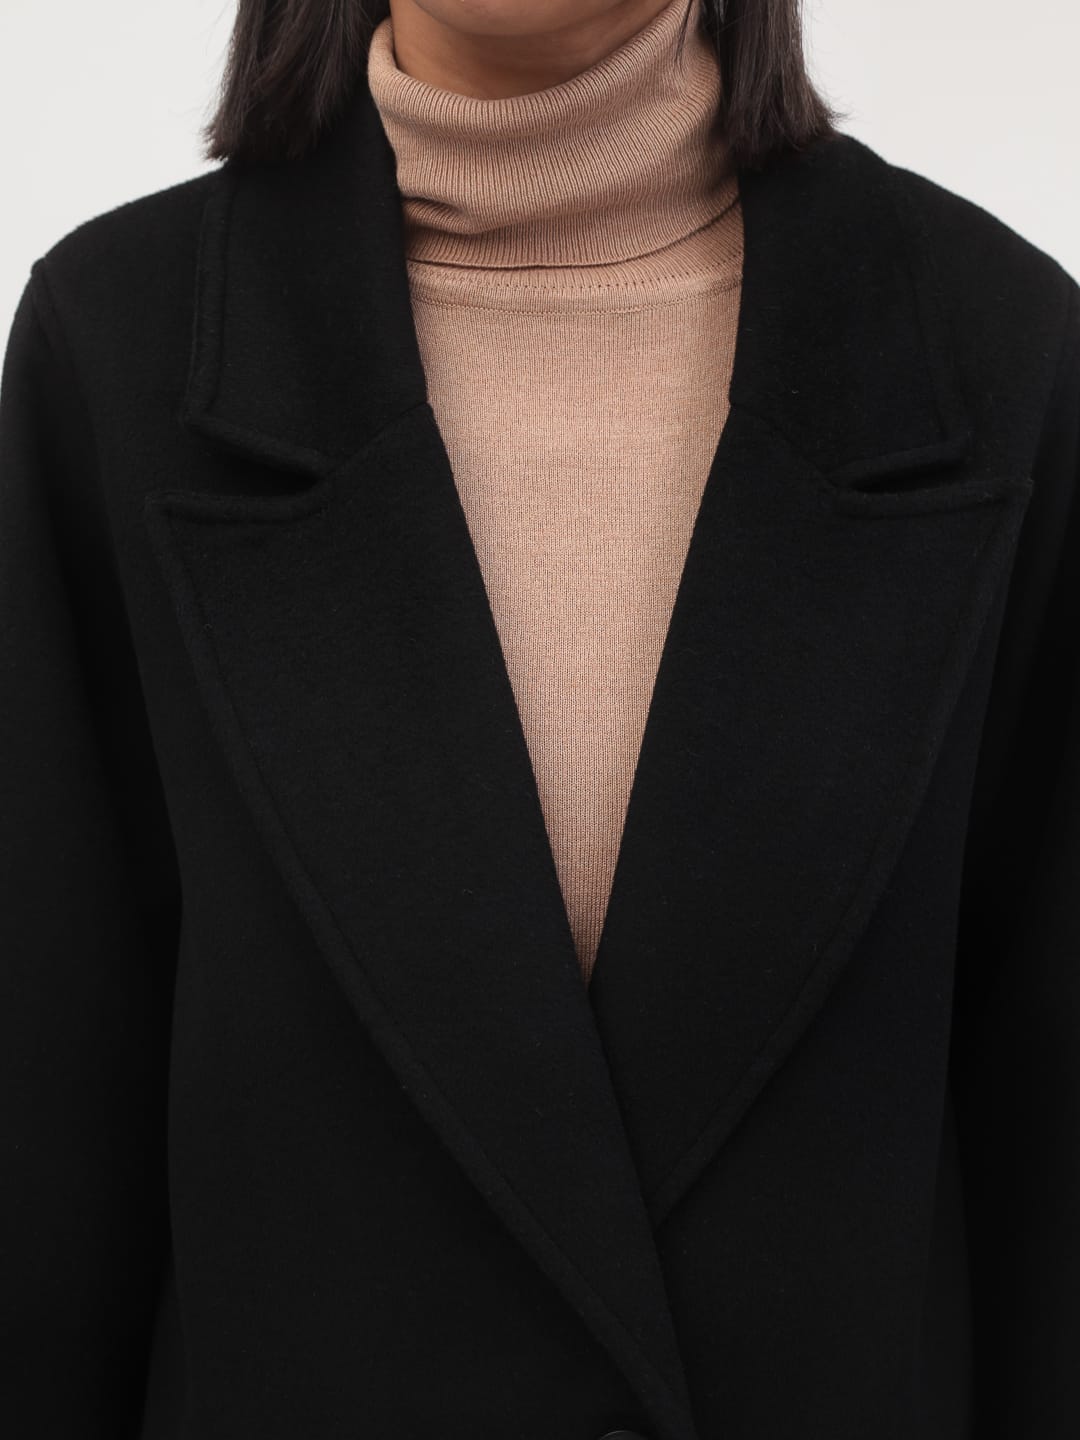 Утеплённое пальто с широкими рукавами в чёрном цвете_3